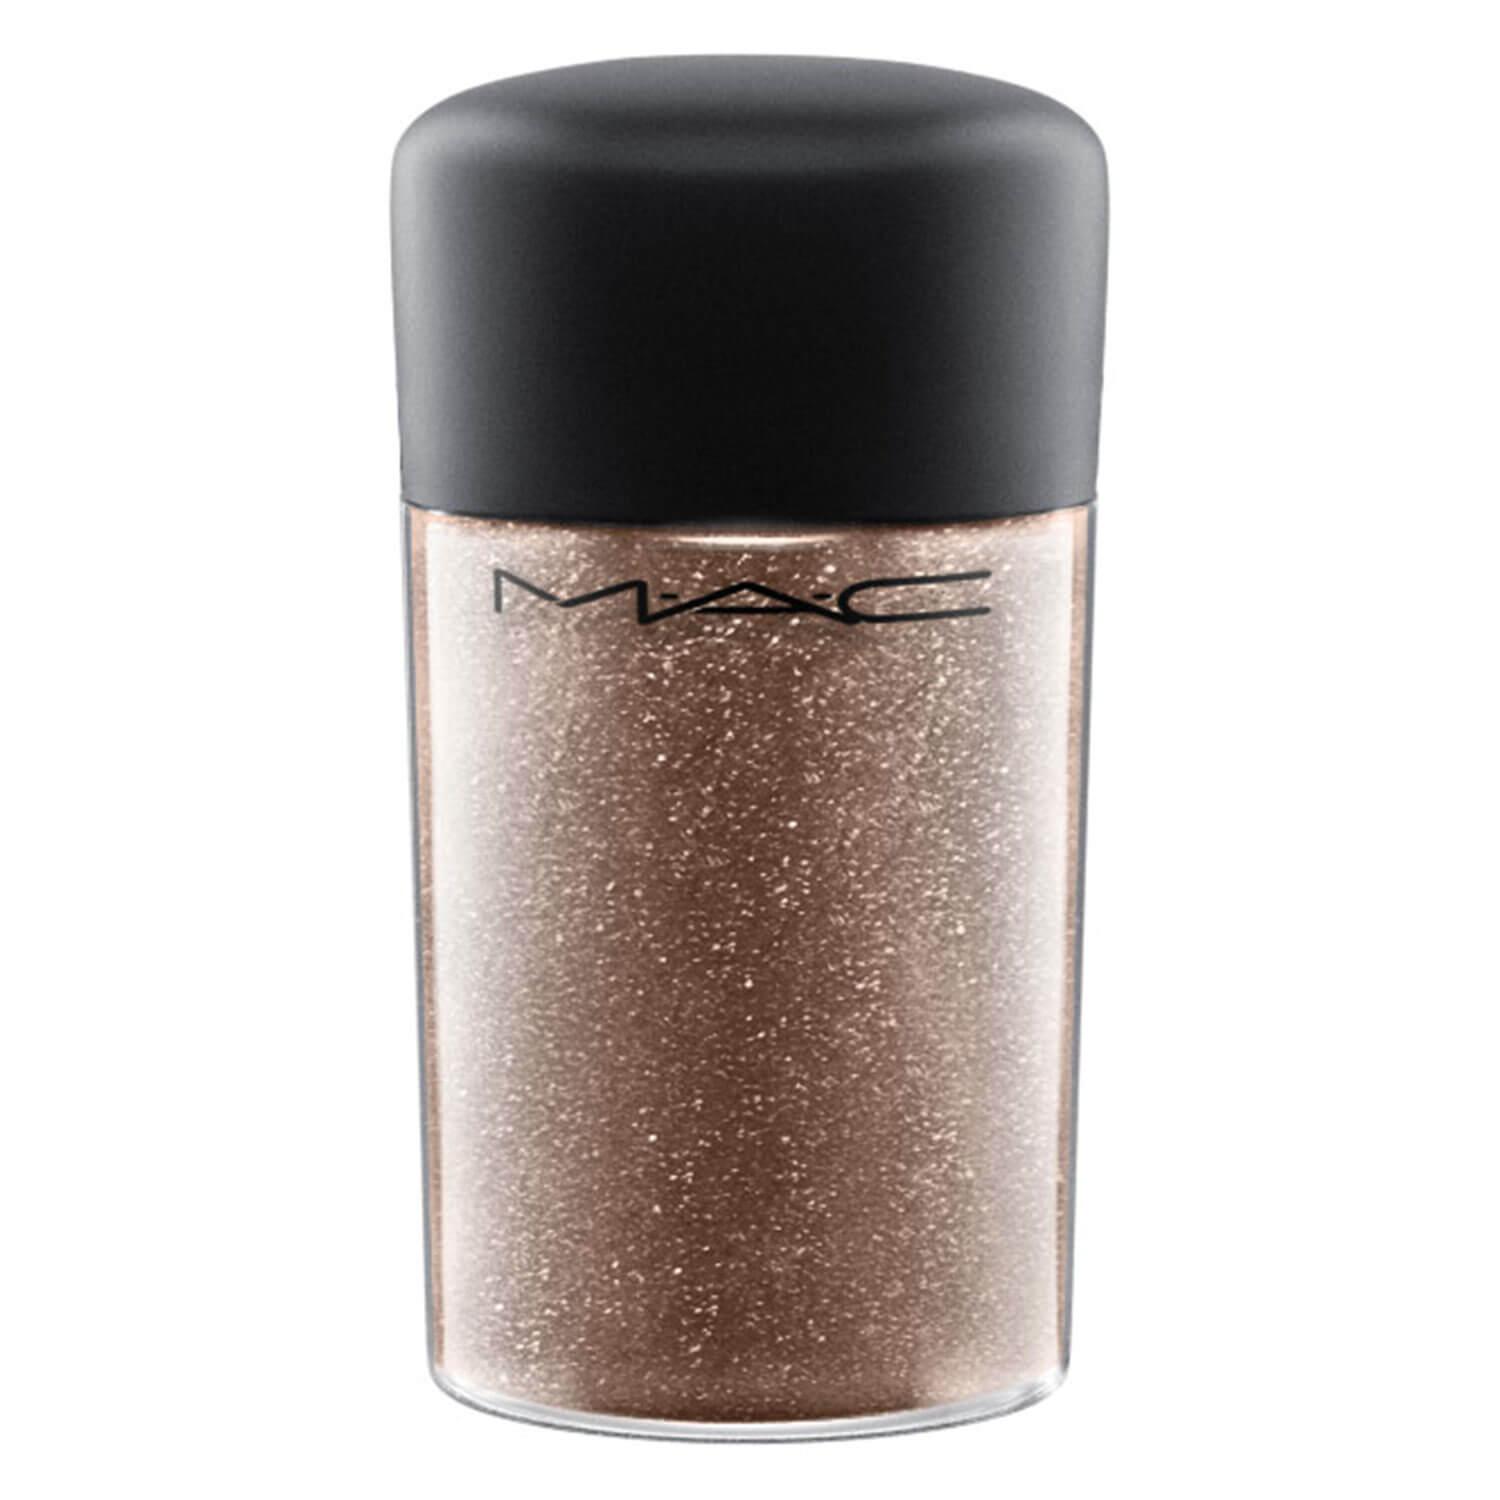 M·A·C In Monochrome - Pro Glitter Bronze